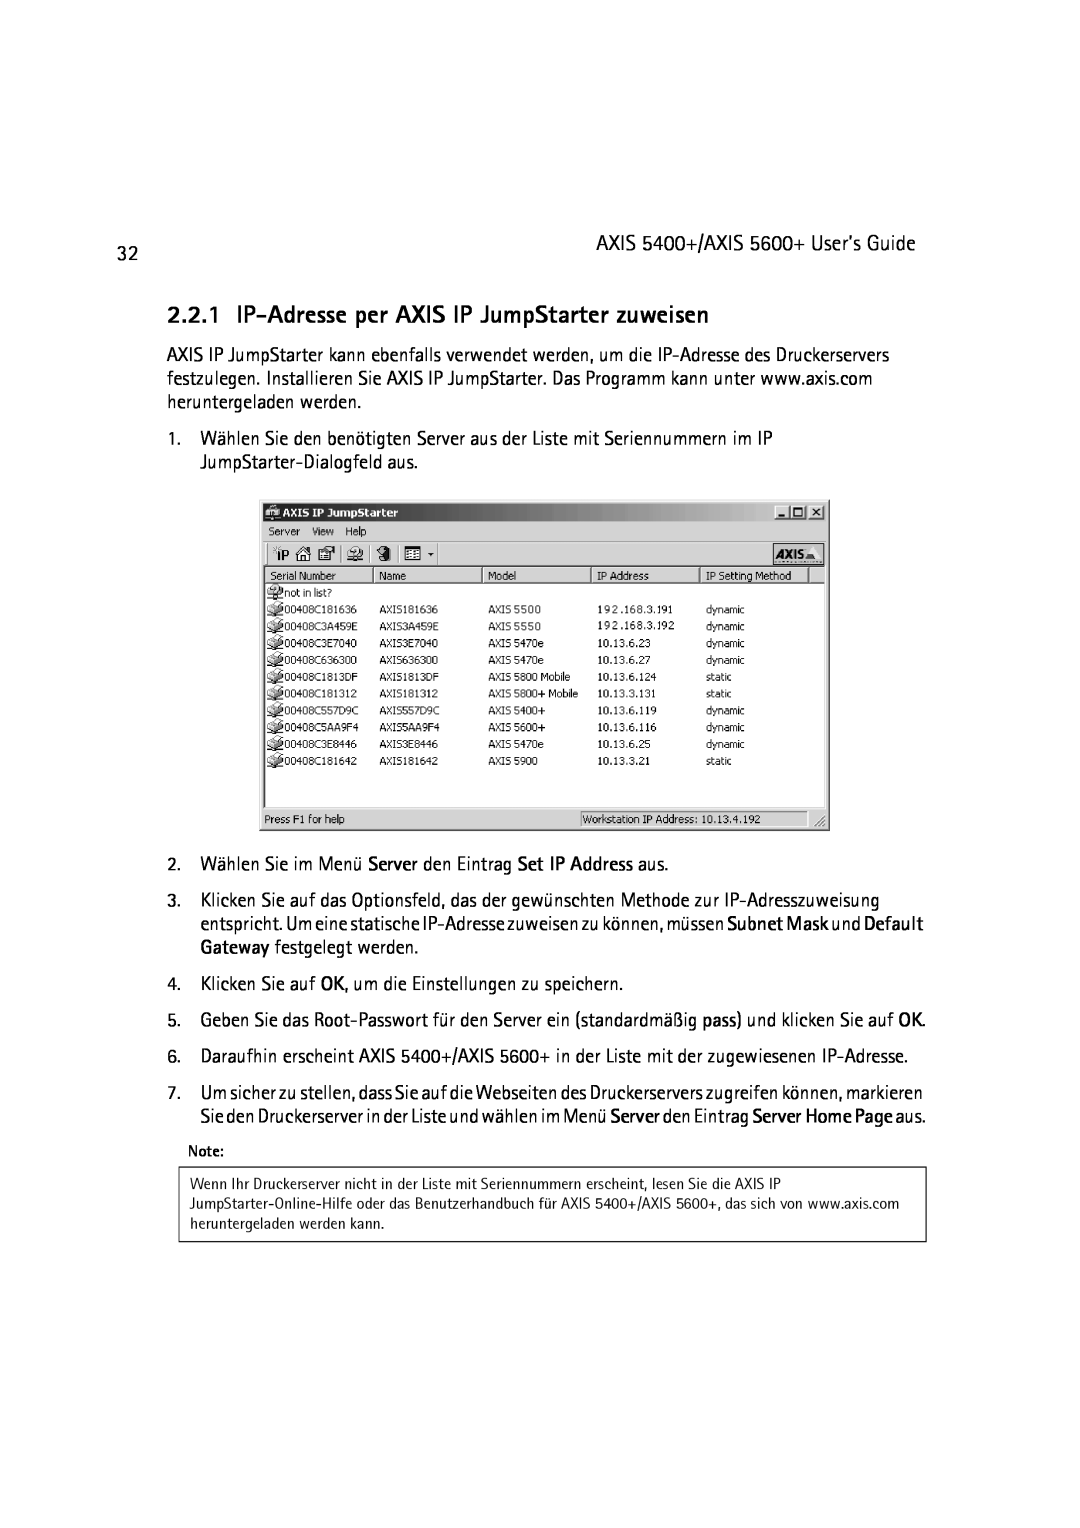 Dell 5600+, 5400+ manual IP-Adresse per AXIS IP JumpStarter zuweisen 